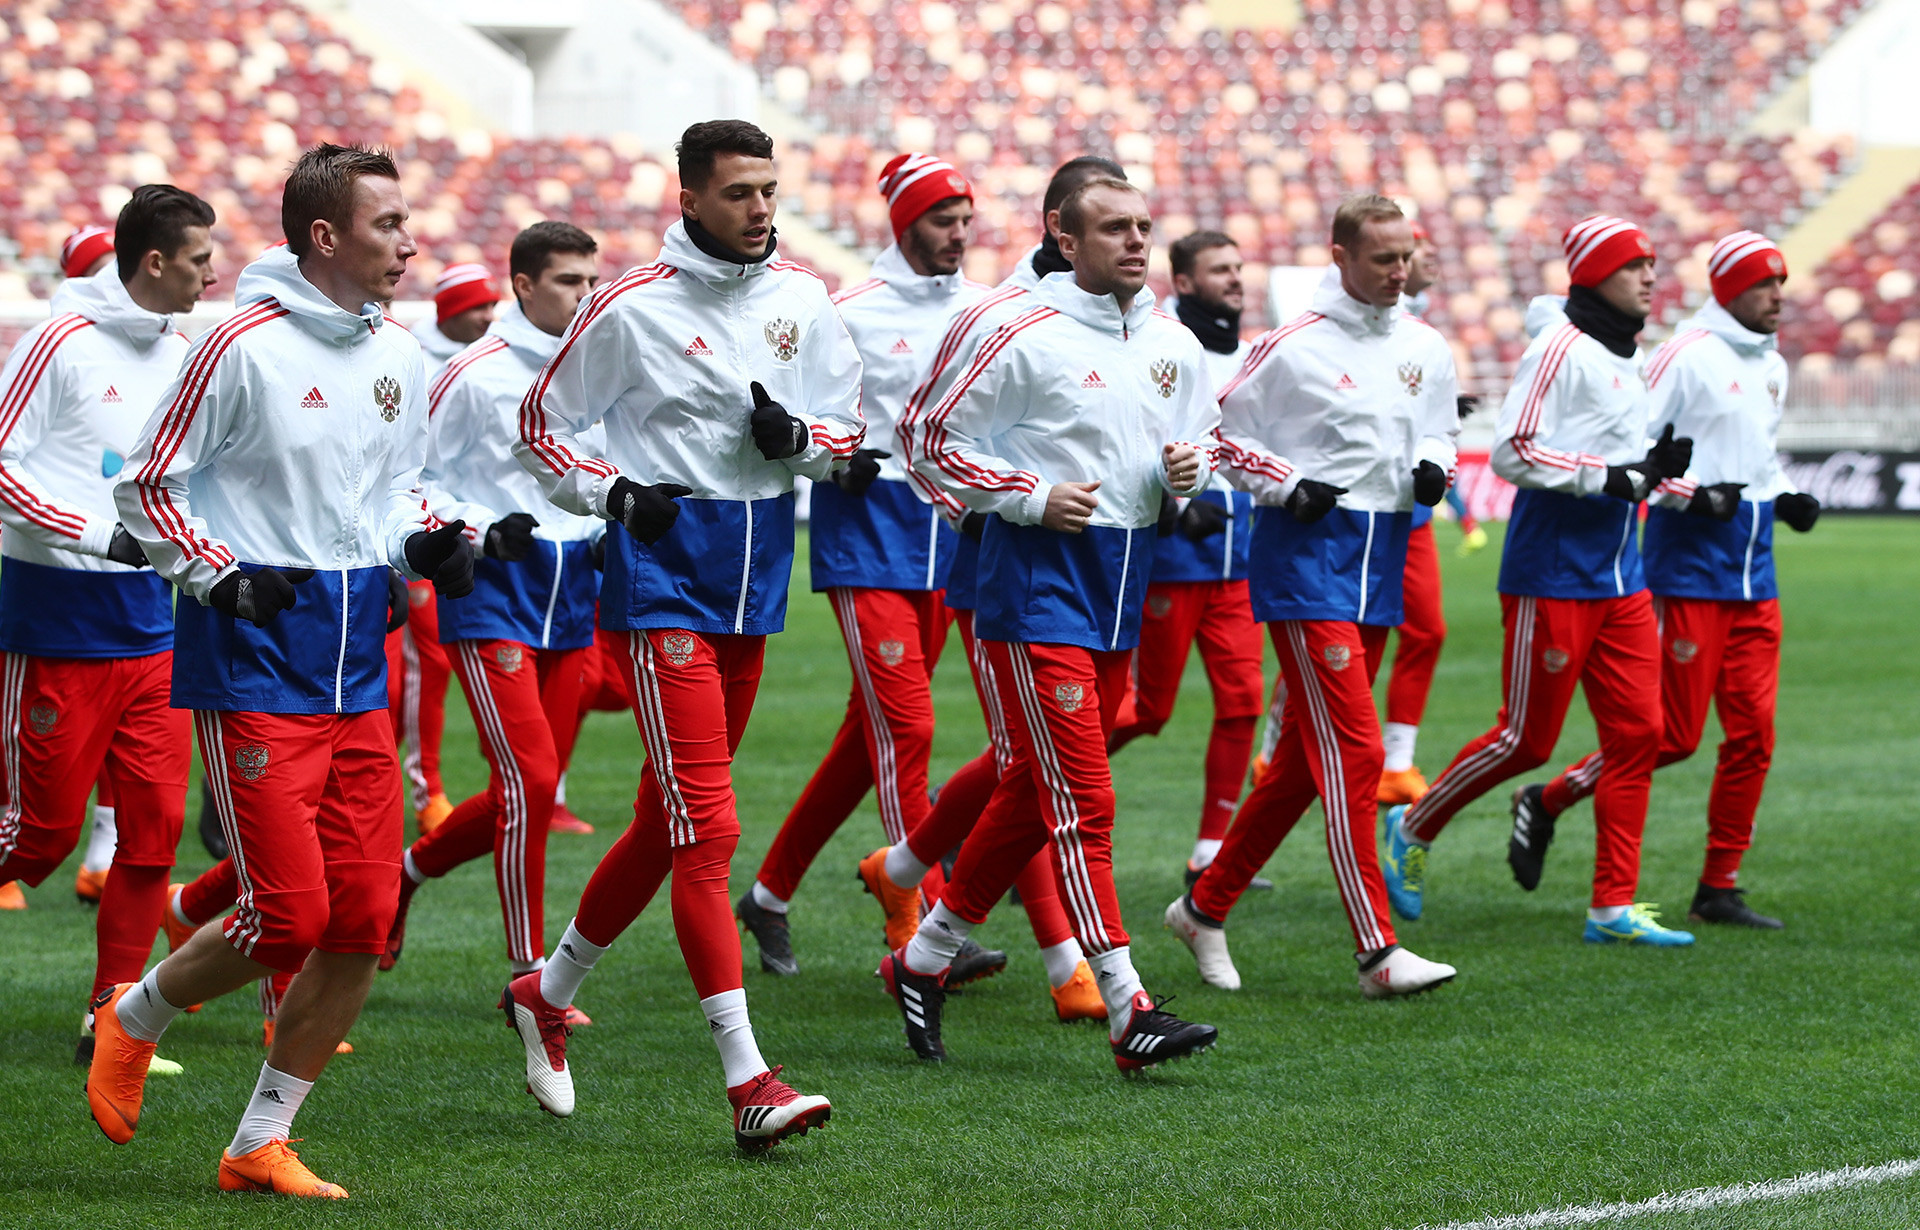 Timans Rusia berlatih sebelum pertandingan persahabatan lawan Brazil, Maret 2018.

